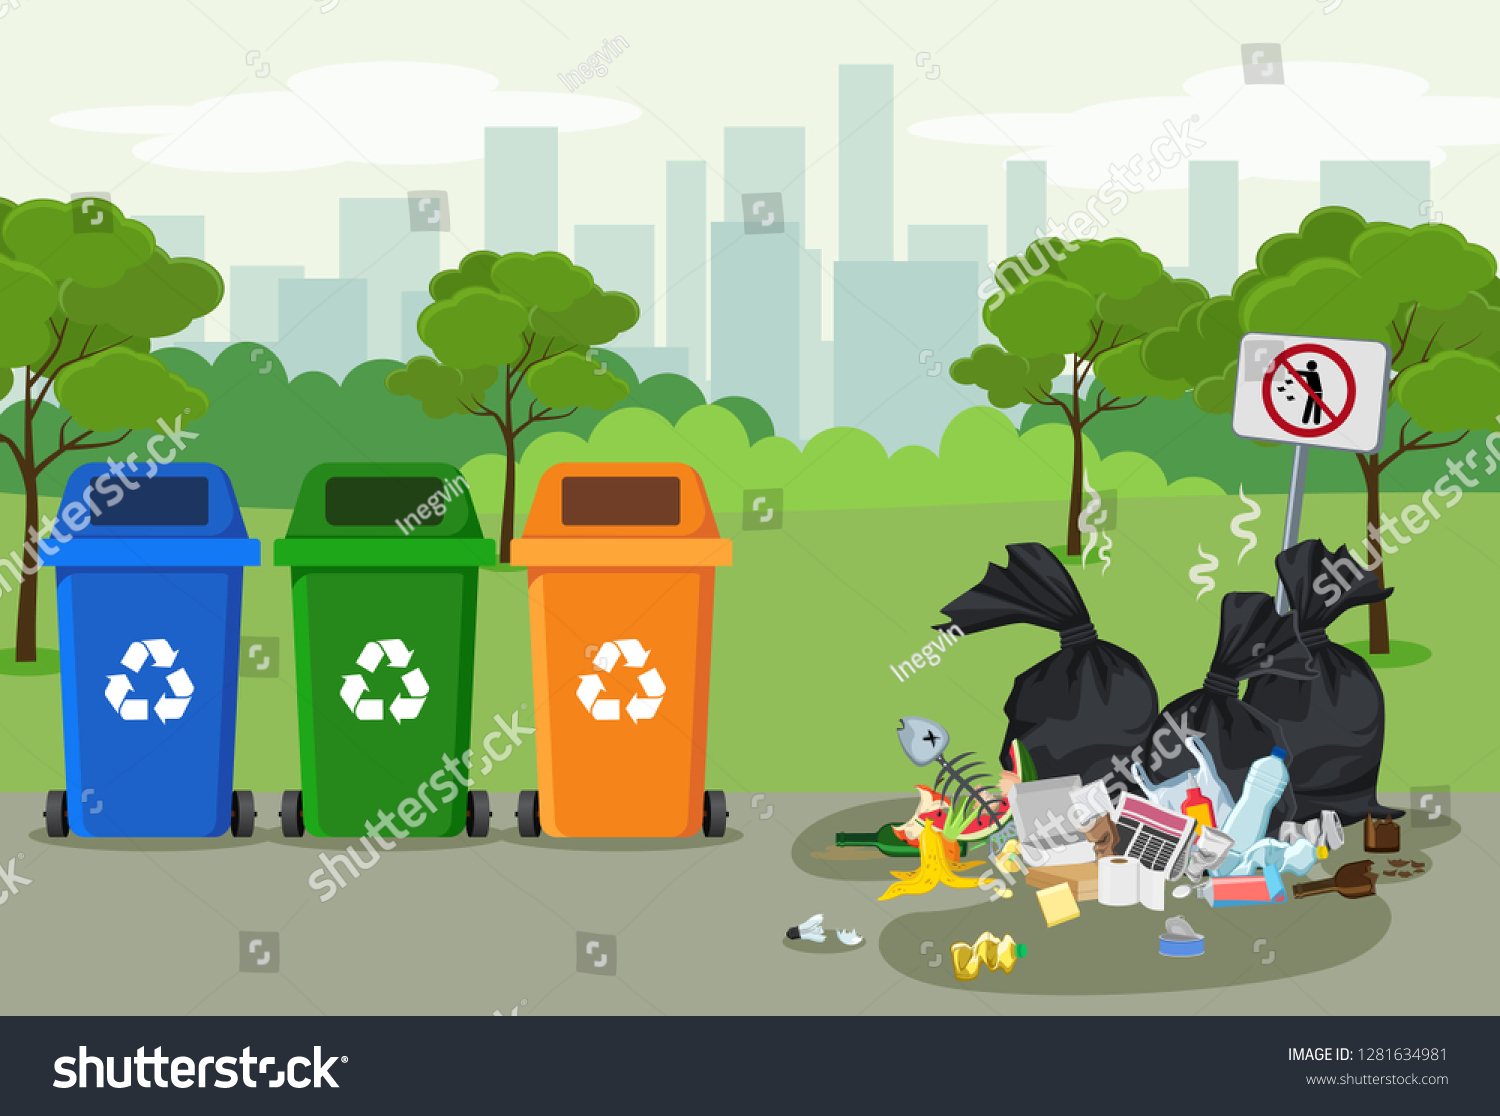 Сортировка мусора иллюстрация